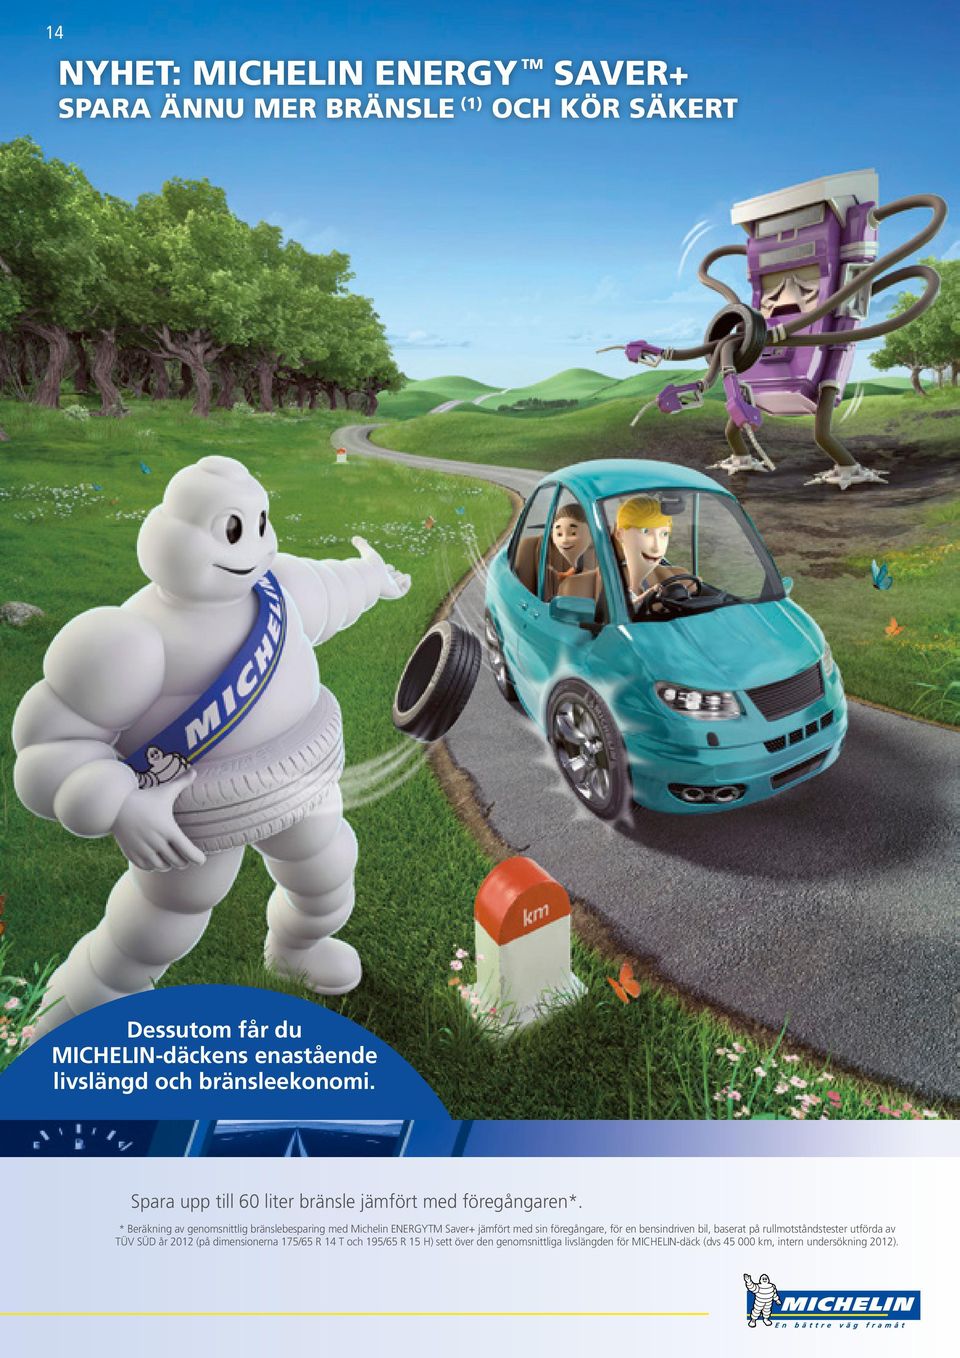 * Beräkning av genomsnittlig bränslebesparing med Michelin ENERGYTM Saver+ jämfört med sin föregångare, för en bensindriven bil, baserat